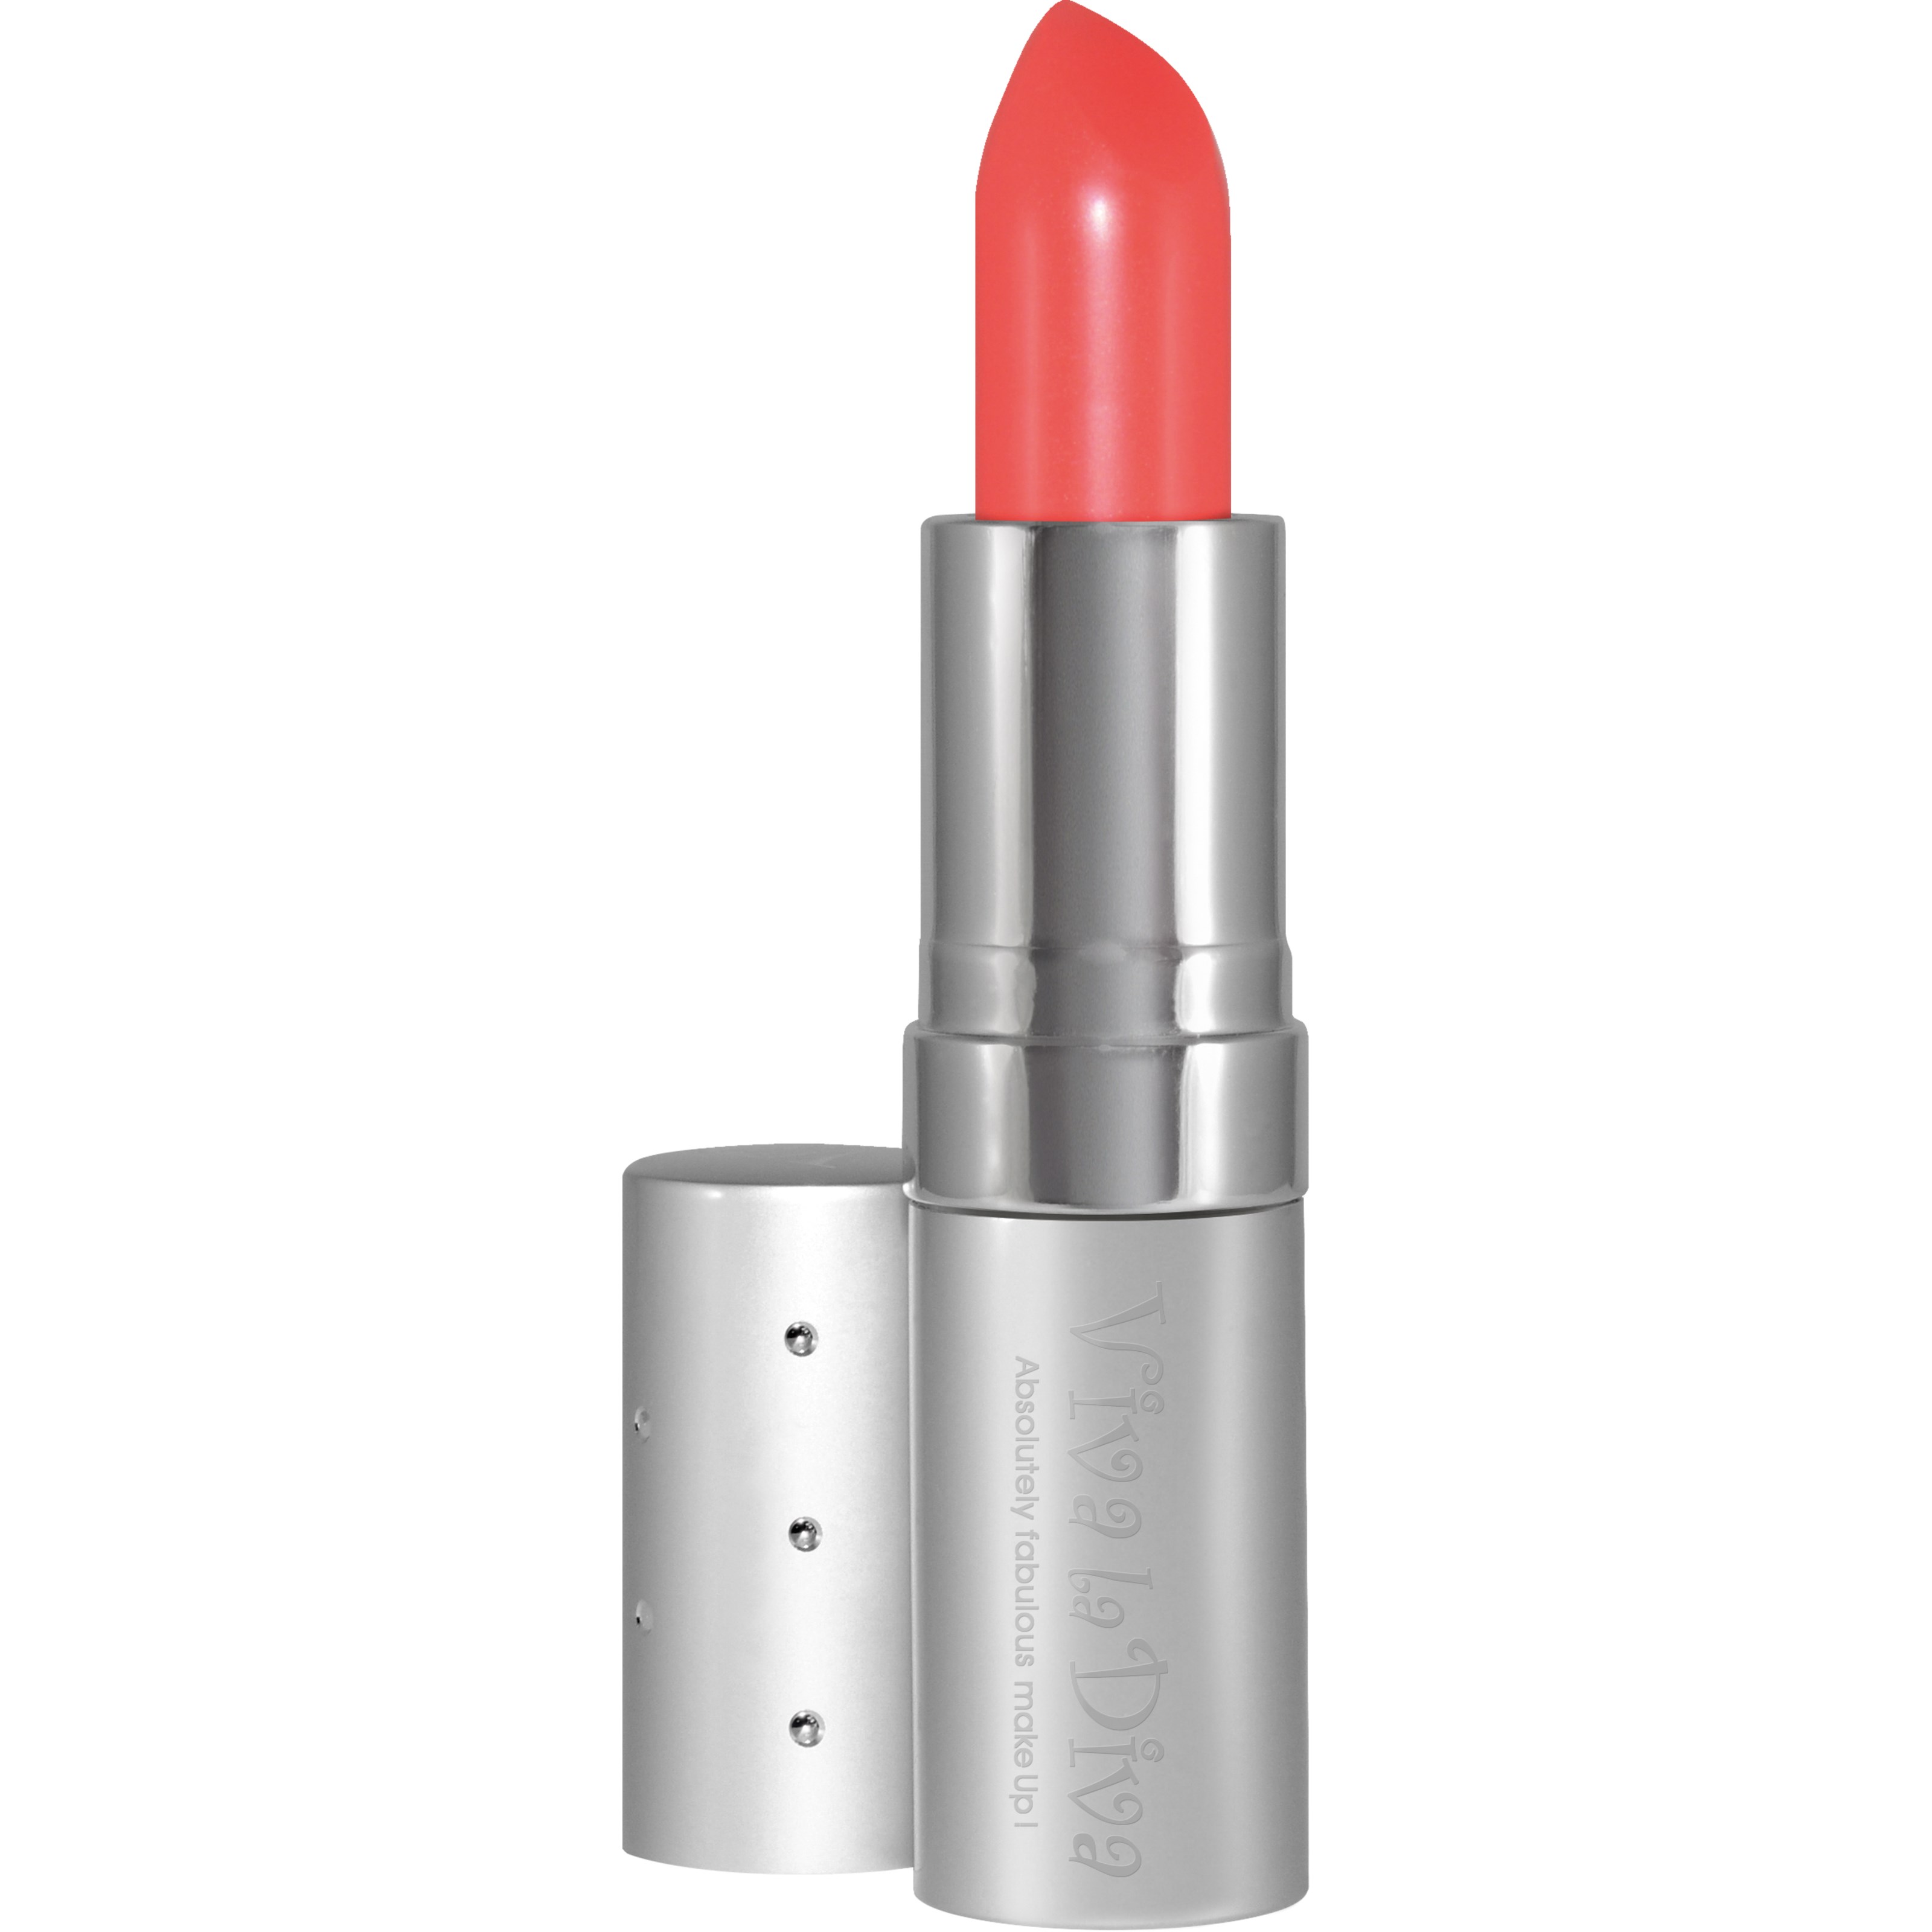 Bilde av Viva La Diva Lipstick 92 Chill Out Creme Finish Orange Shame On You